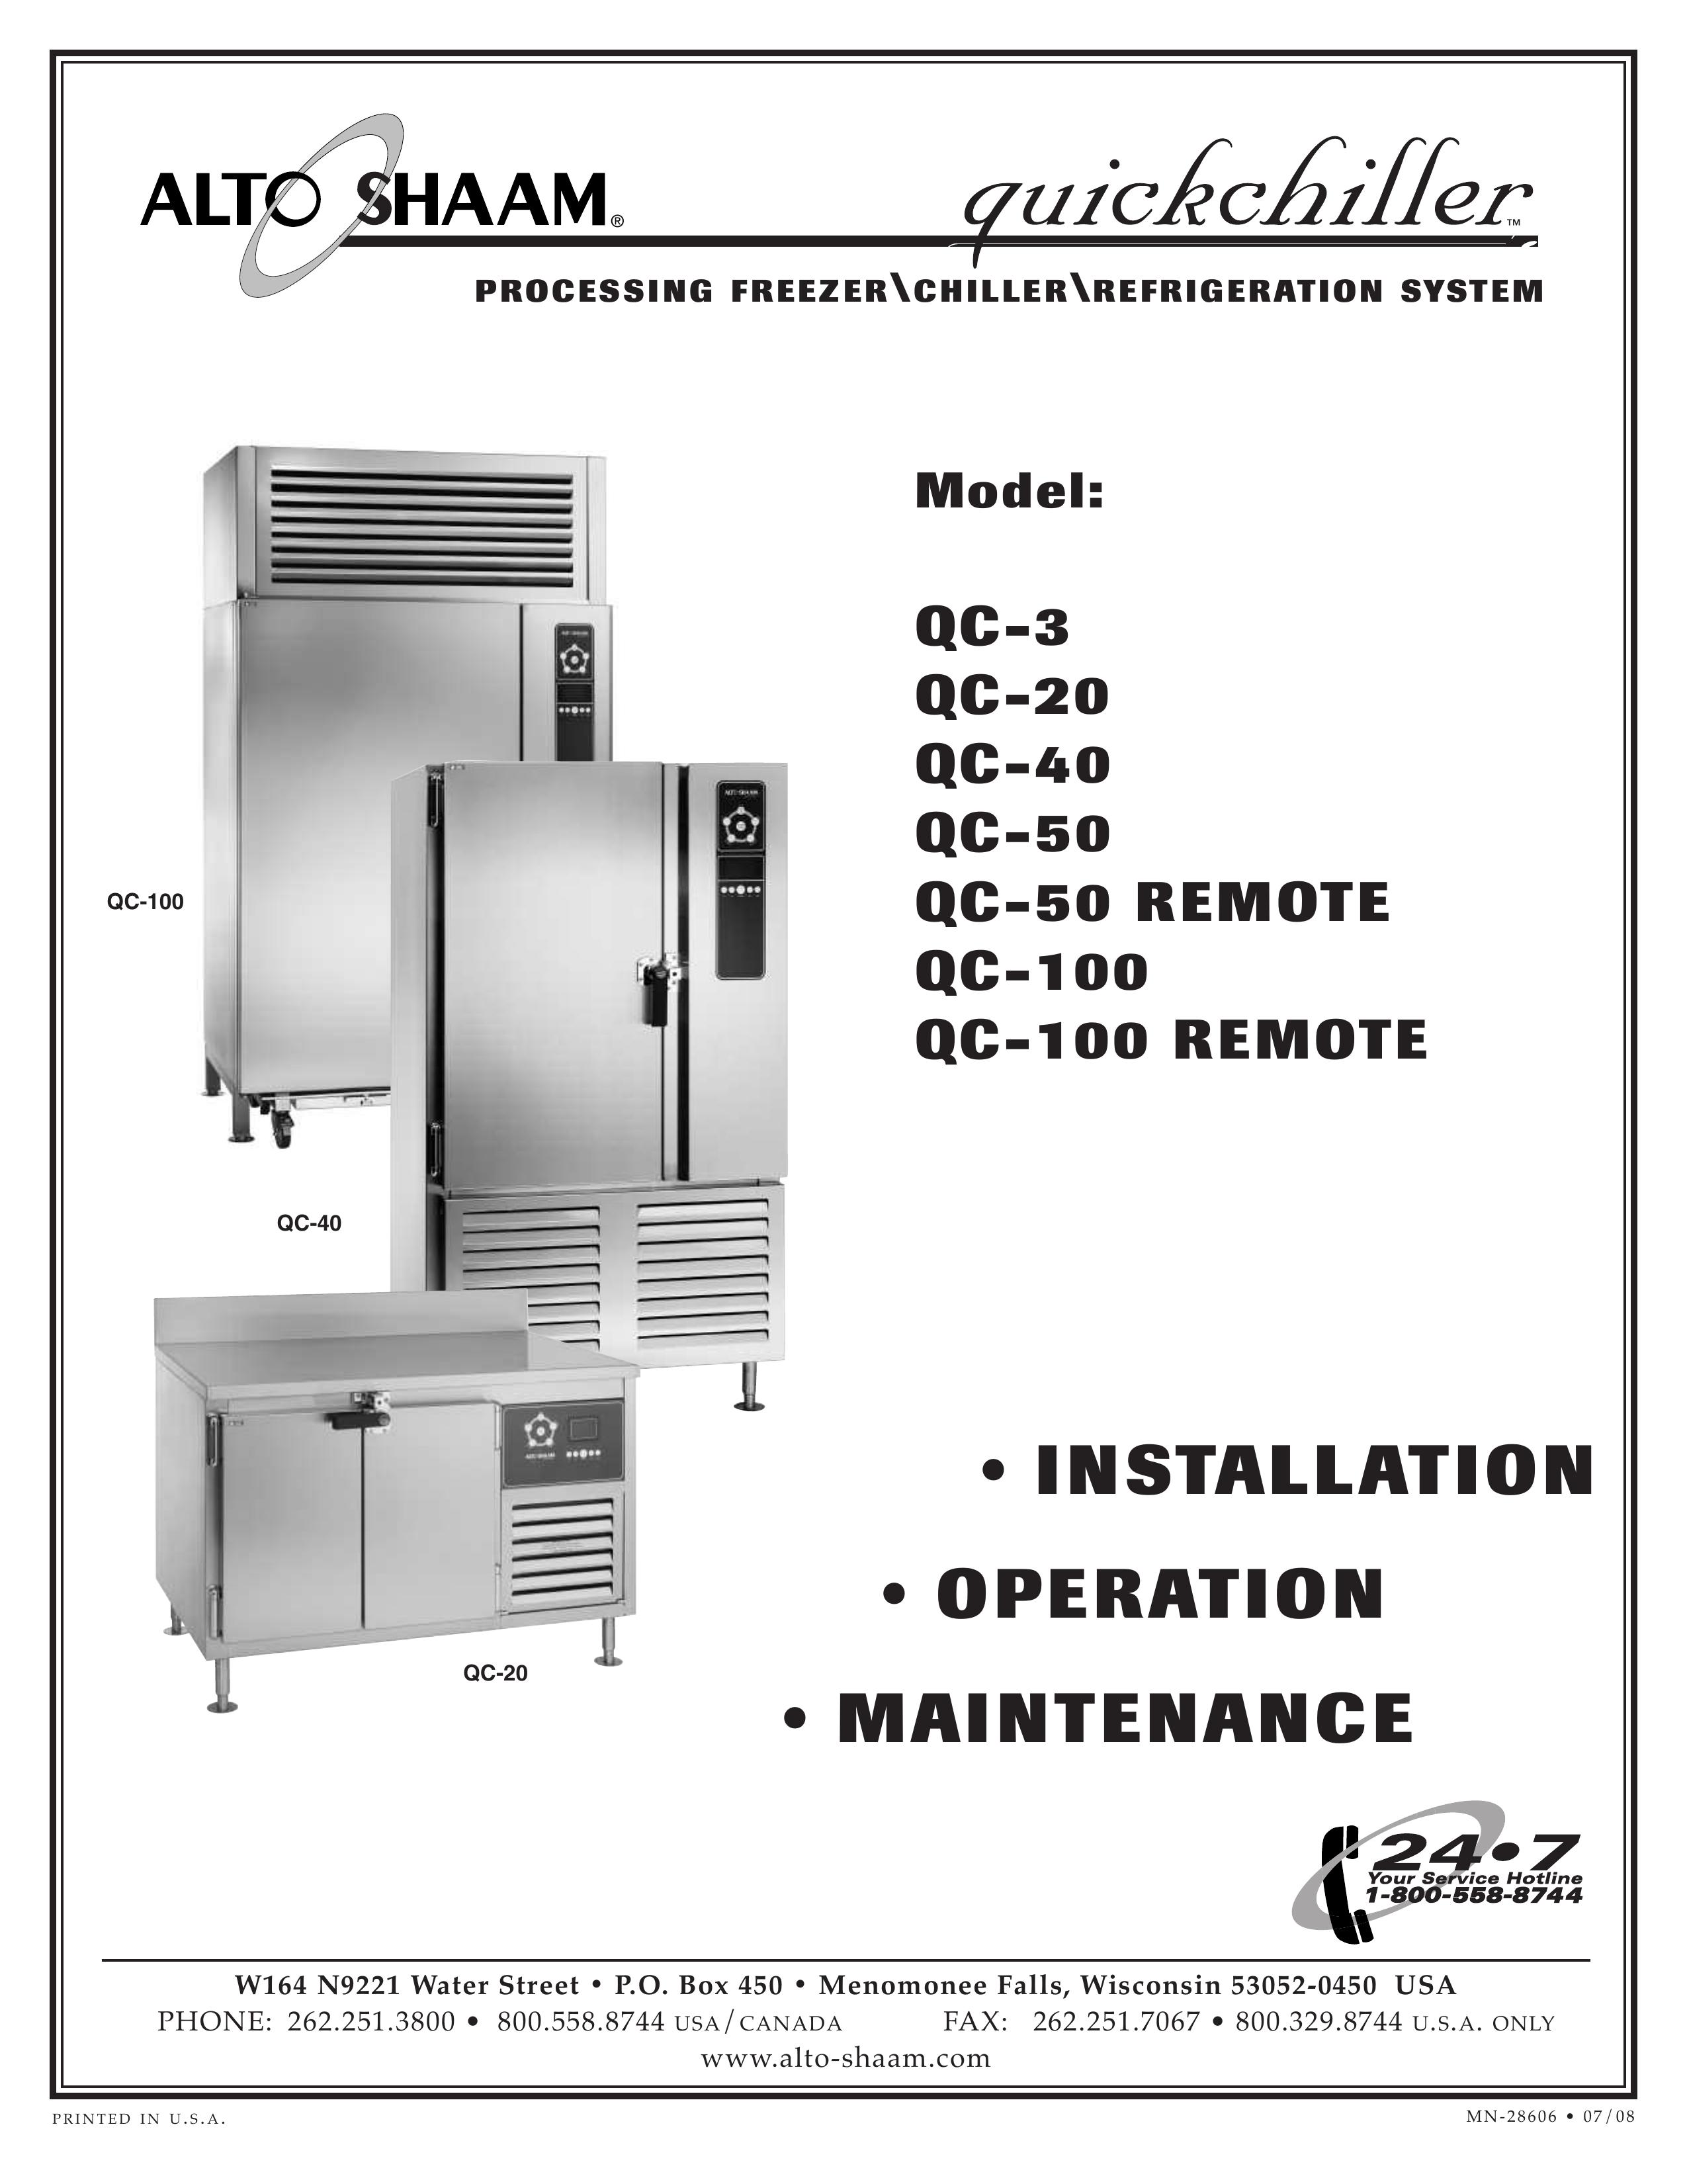 Alto-Shaam QC-50 REMOTE Refrigerator User Manual